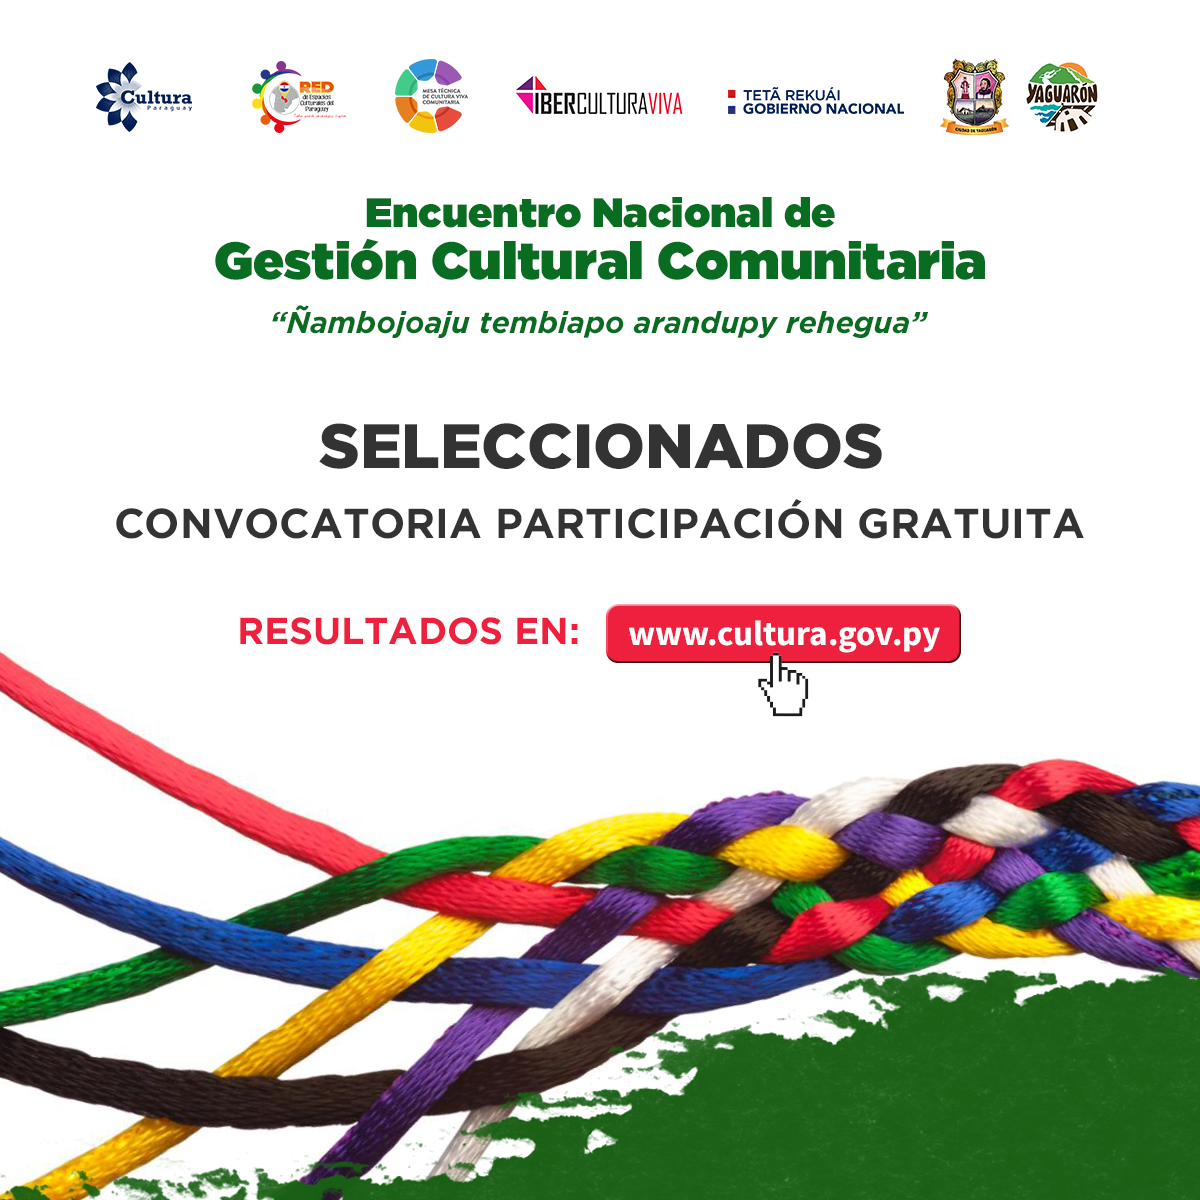 Seleccionados para participación gratuita en el Encuentro Nacional de Gestión Cultural Comunitaria del Paraguay imagen